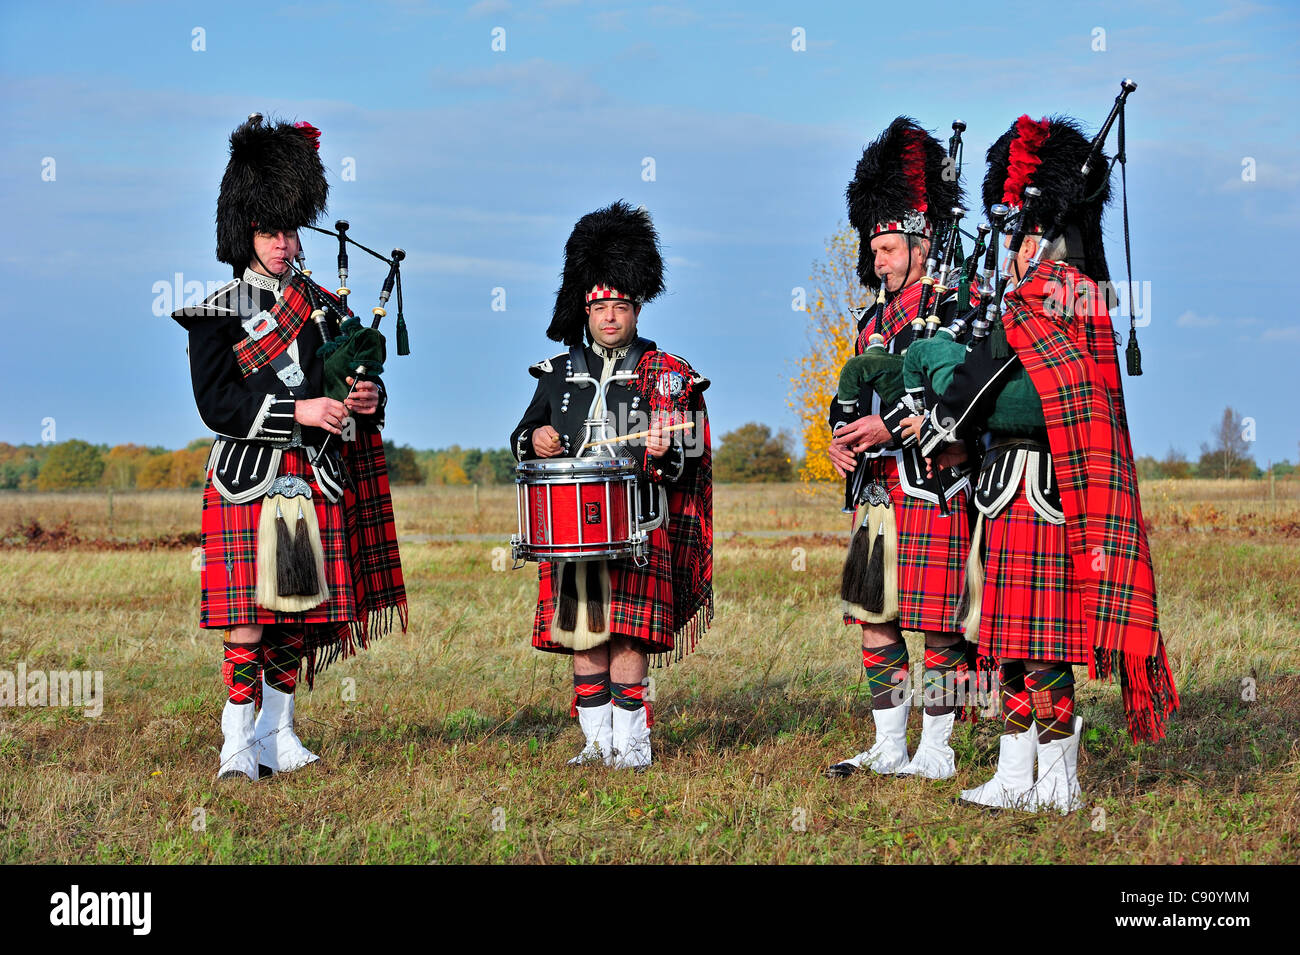 Cornemuse des Highlands écossais jouant Pipes and Drums dans la lande, Ecosse, Royaume-Uni Banque D'Images